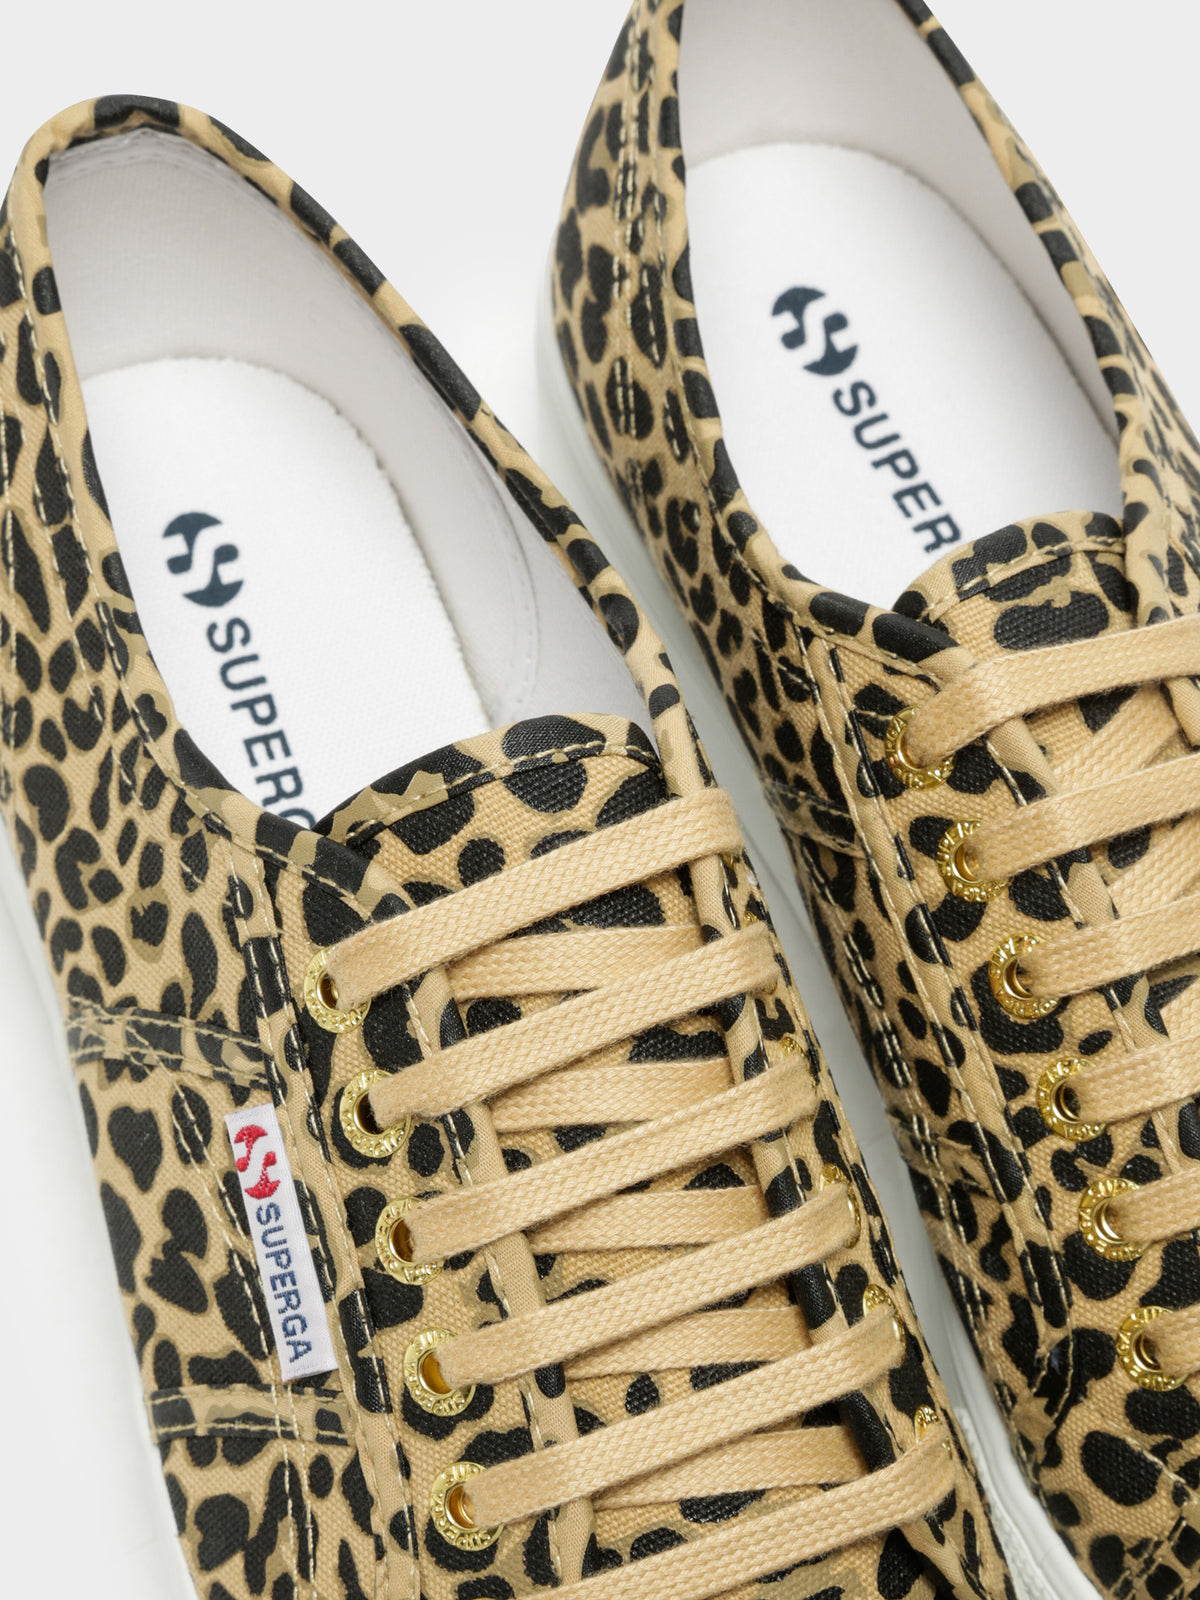 Womens 2790 Fancotw Platform Sneakers in Leopard Print